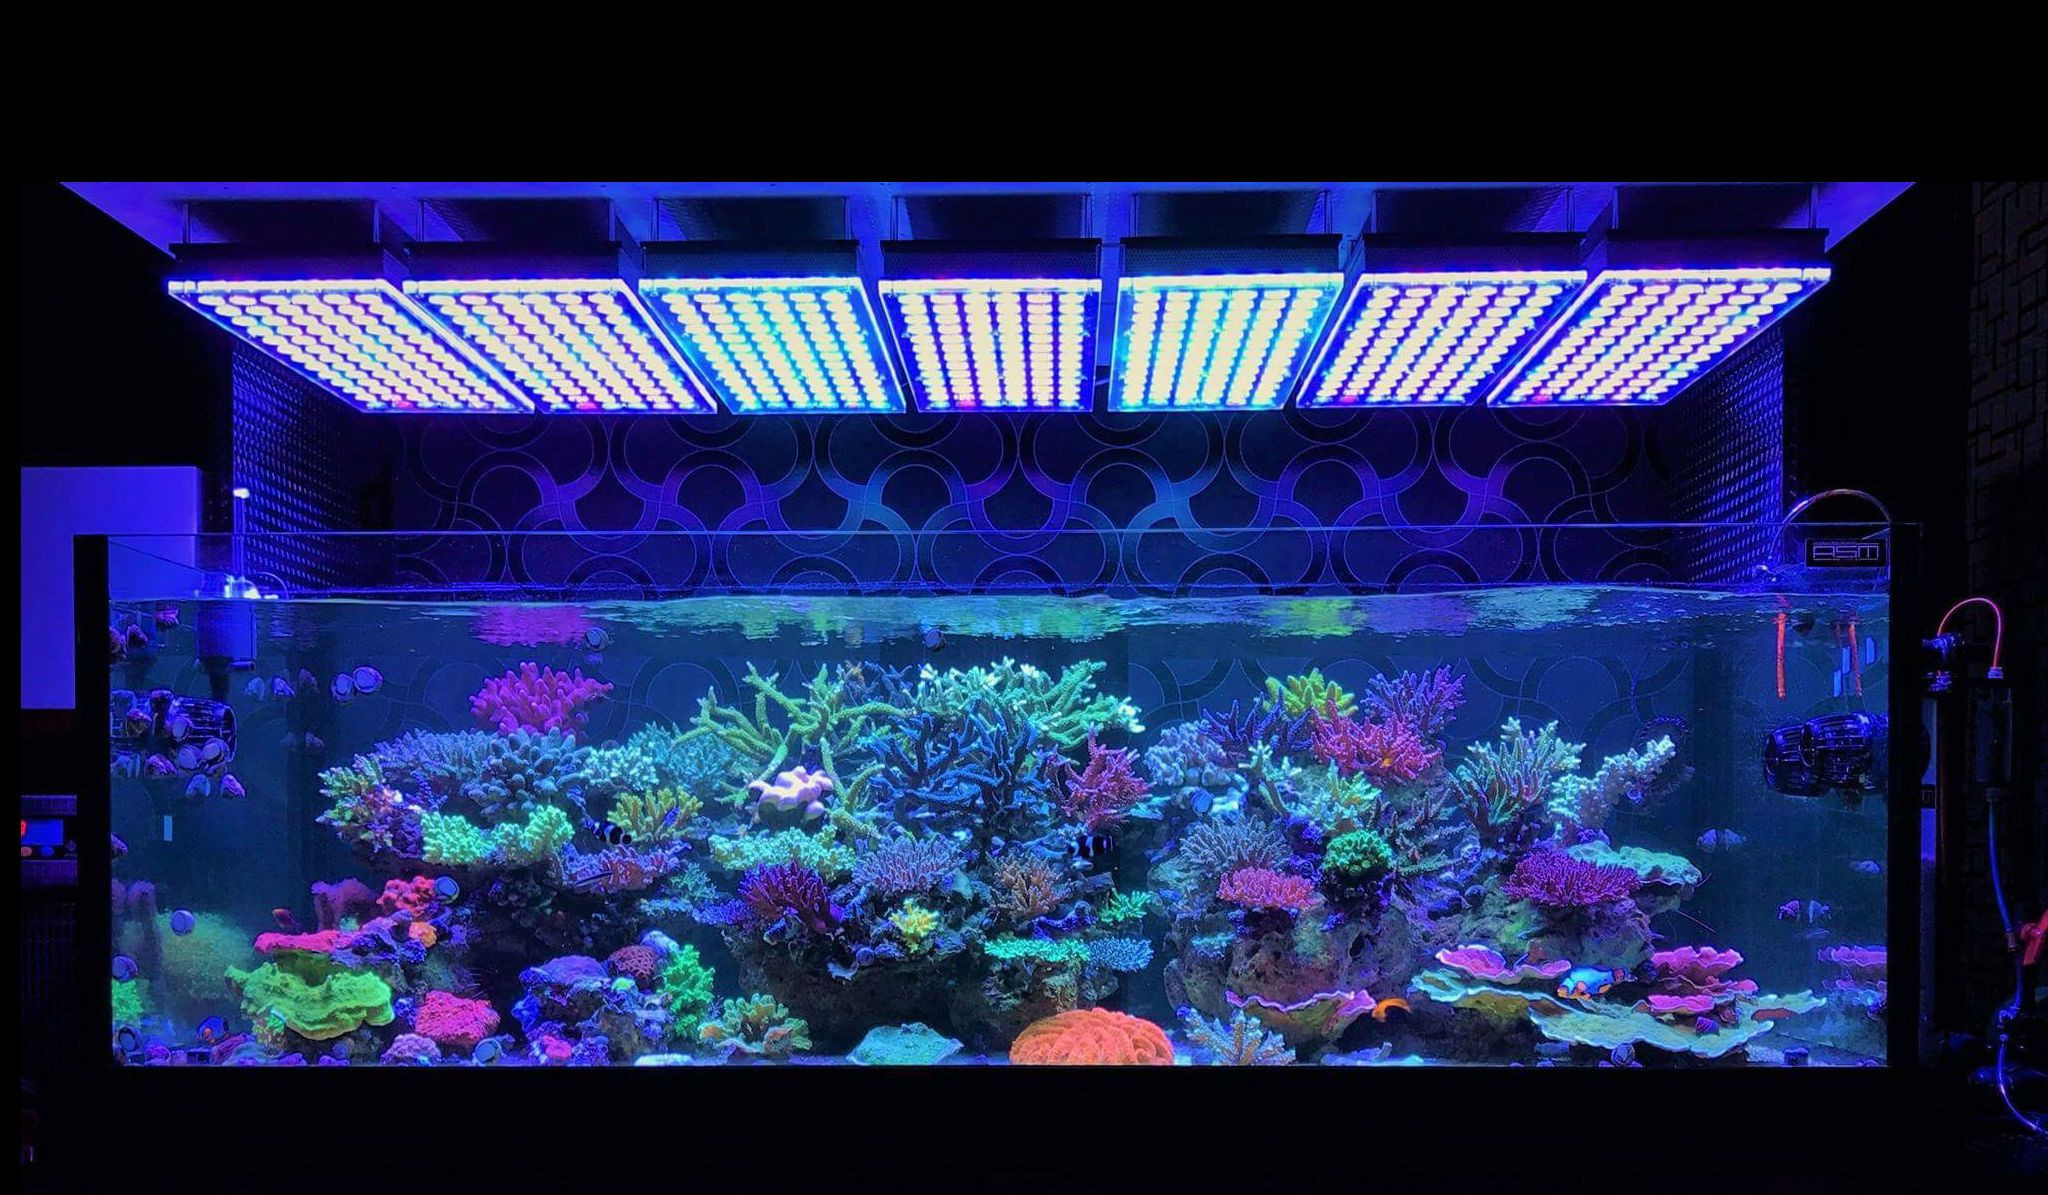 Best ideas about Led Aquarium Light
. Save or Pin Atlantik V4 Reef Aquarium LED lighting • Orphek Aquarium Now.